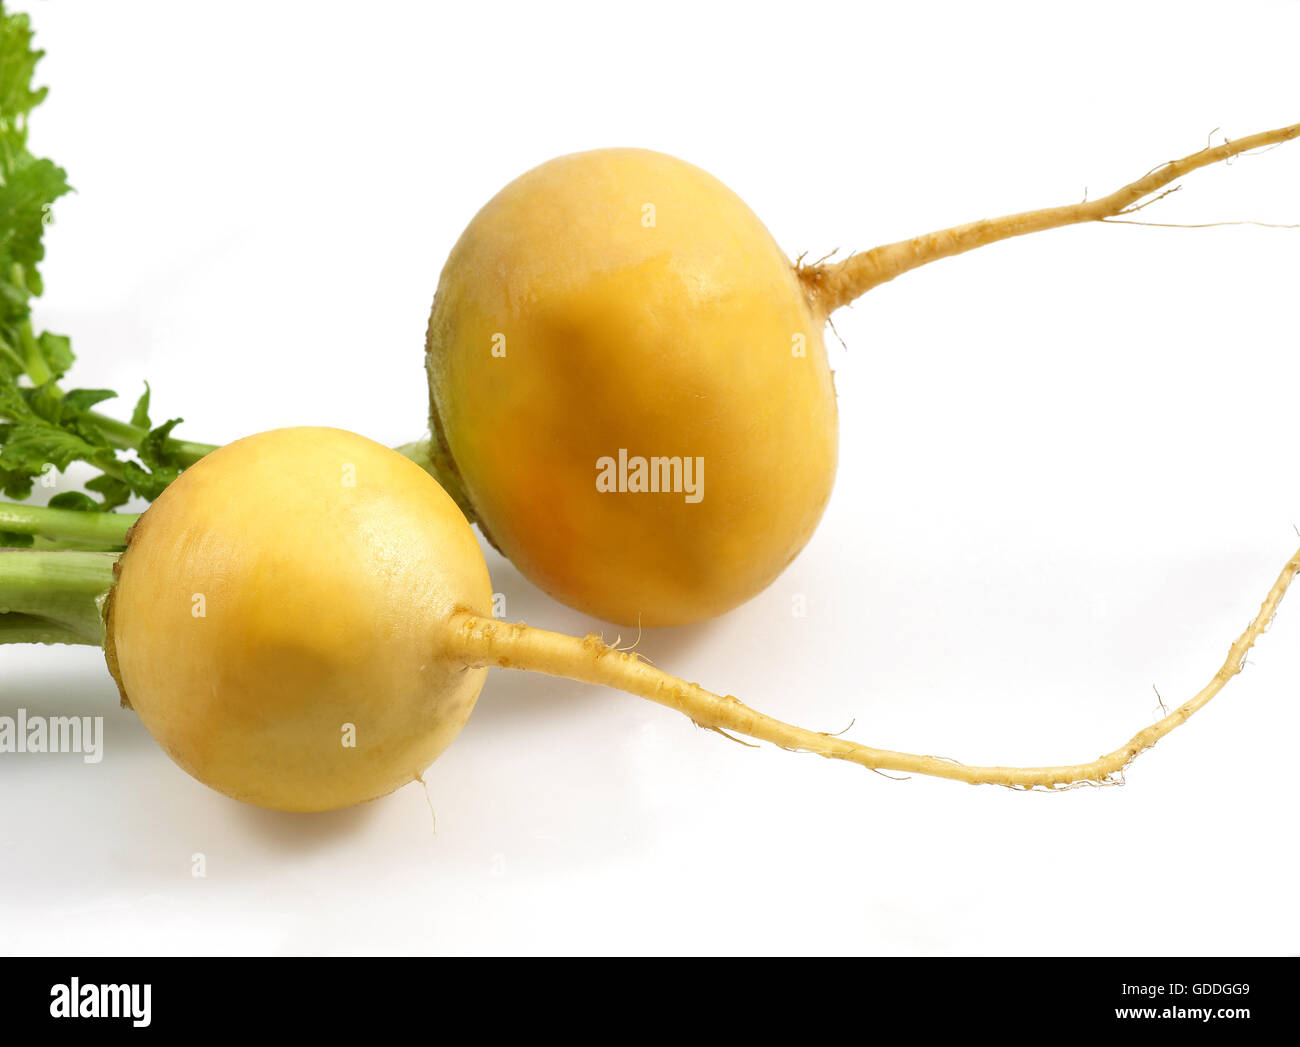 Golden Ball Turnips, brassica rapa, Vegetables against White Background Stock Photo